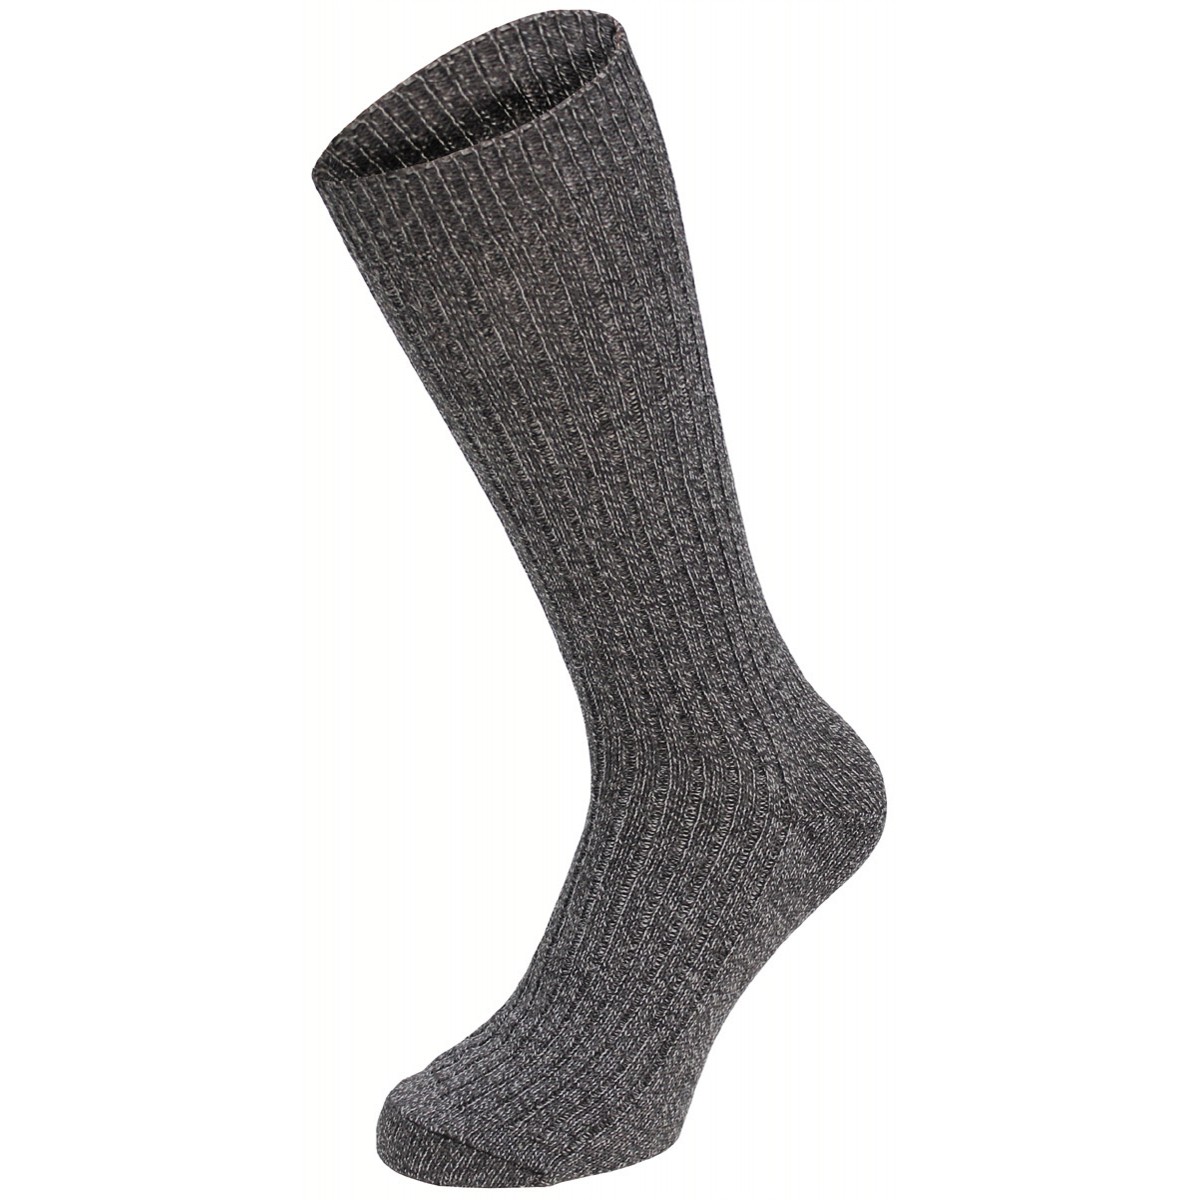 Ponožky styl BW s patou extra vysoké - šedé, 45-46